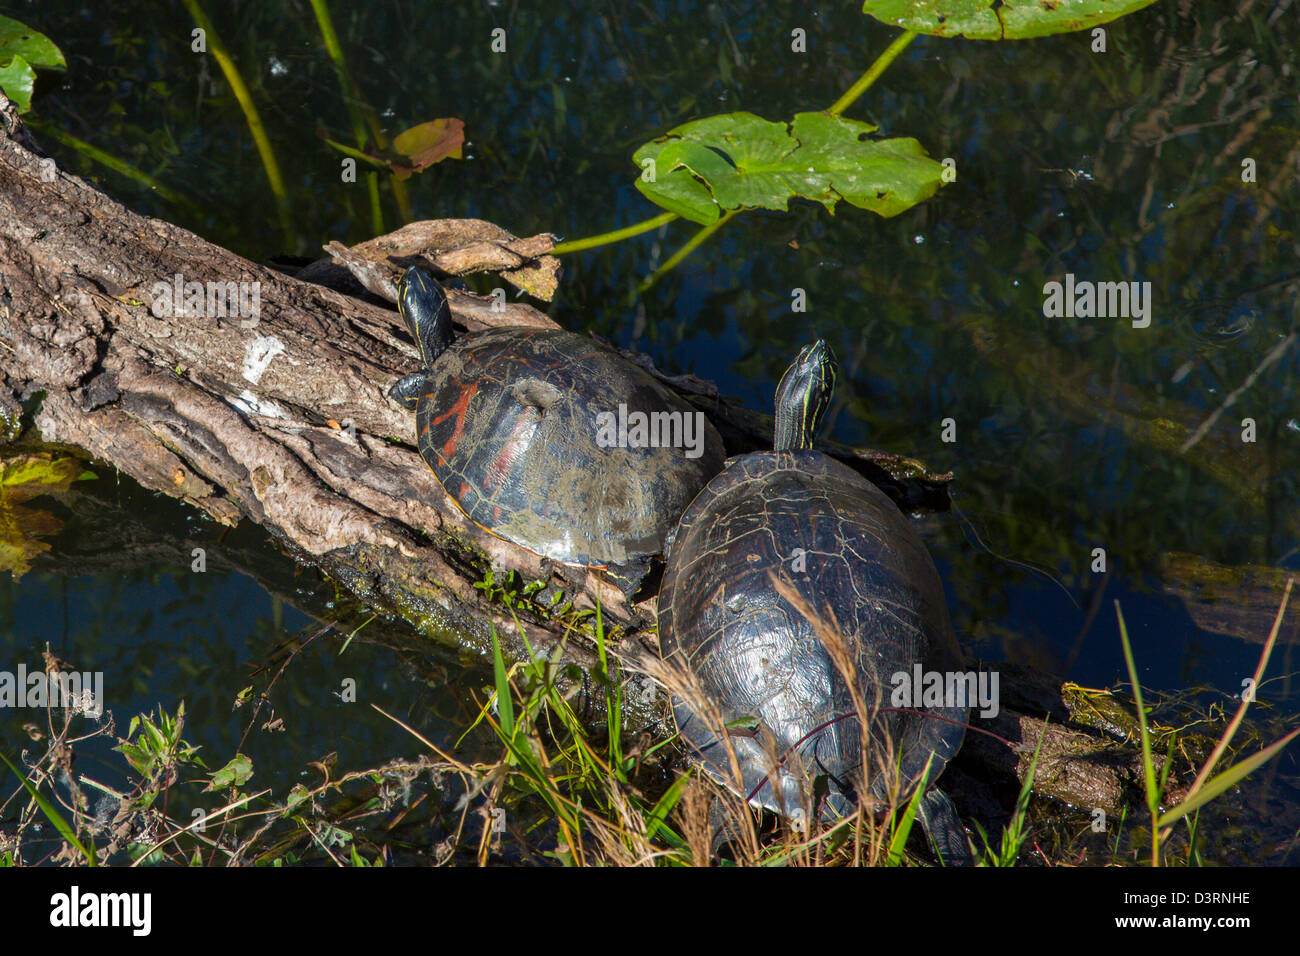 Zwei Schildkröten auf Baumstamm entlang der Anhinga Trail im Royal Palm Visitor Center in Florida Everglades Nationalpark Stockfoto